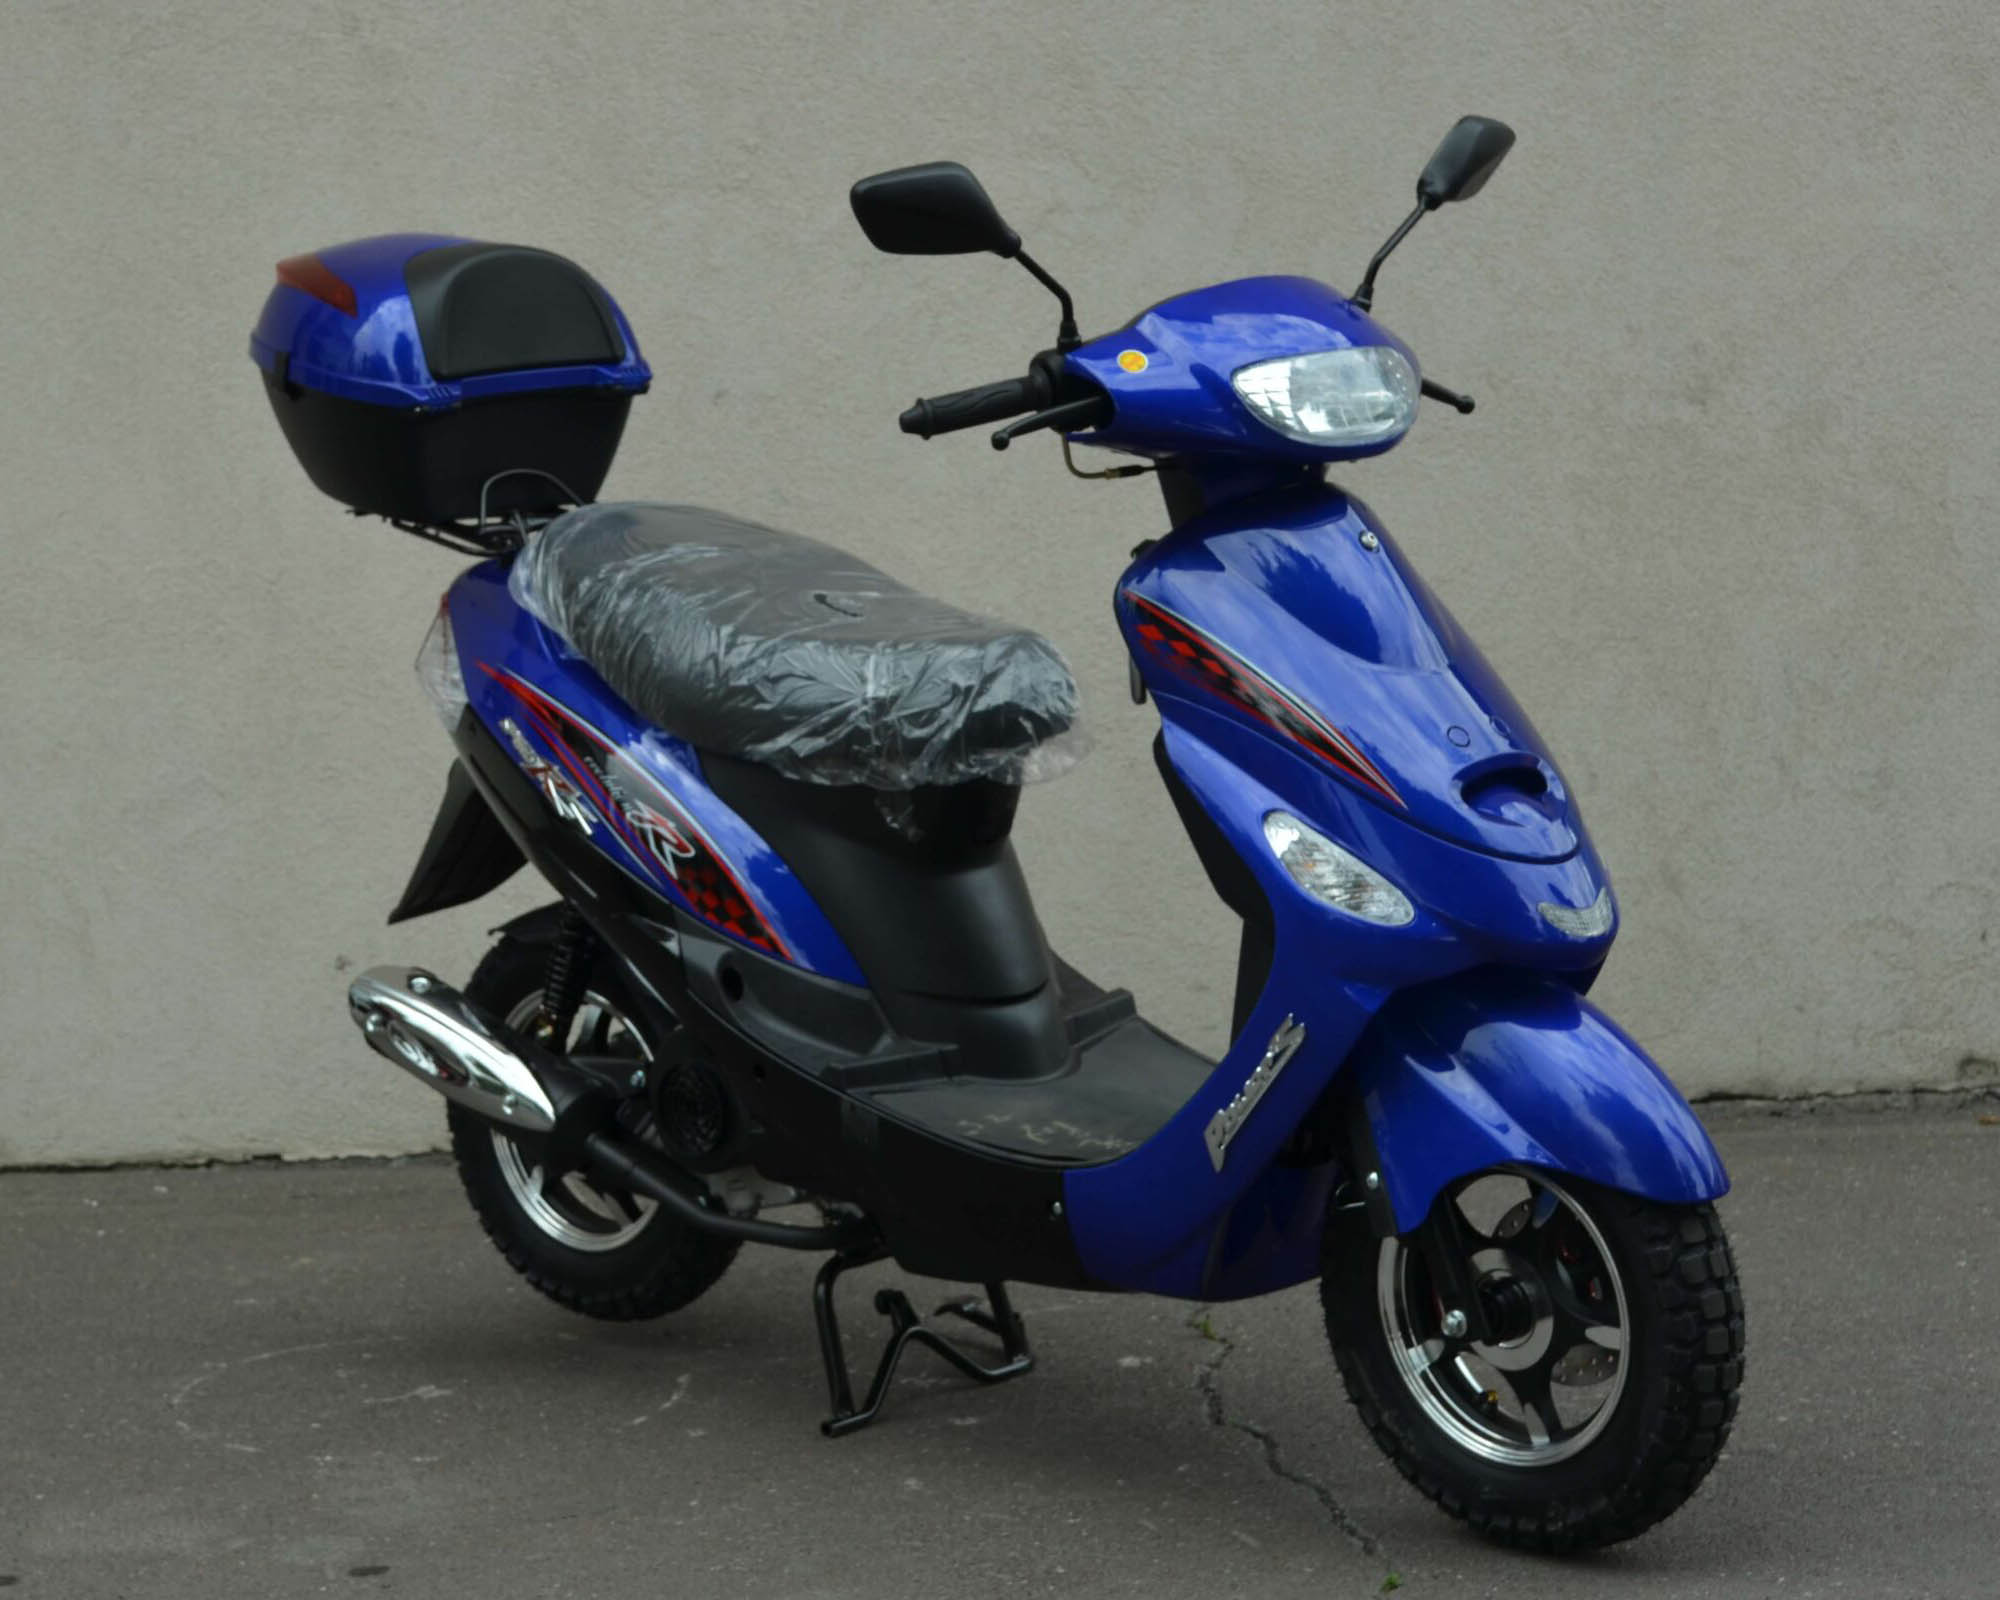 Скутер Санни 49.9 цвет синий вид справа спереди купить по низкой цене